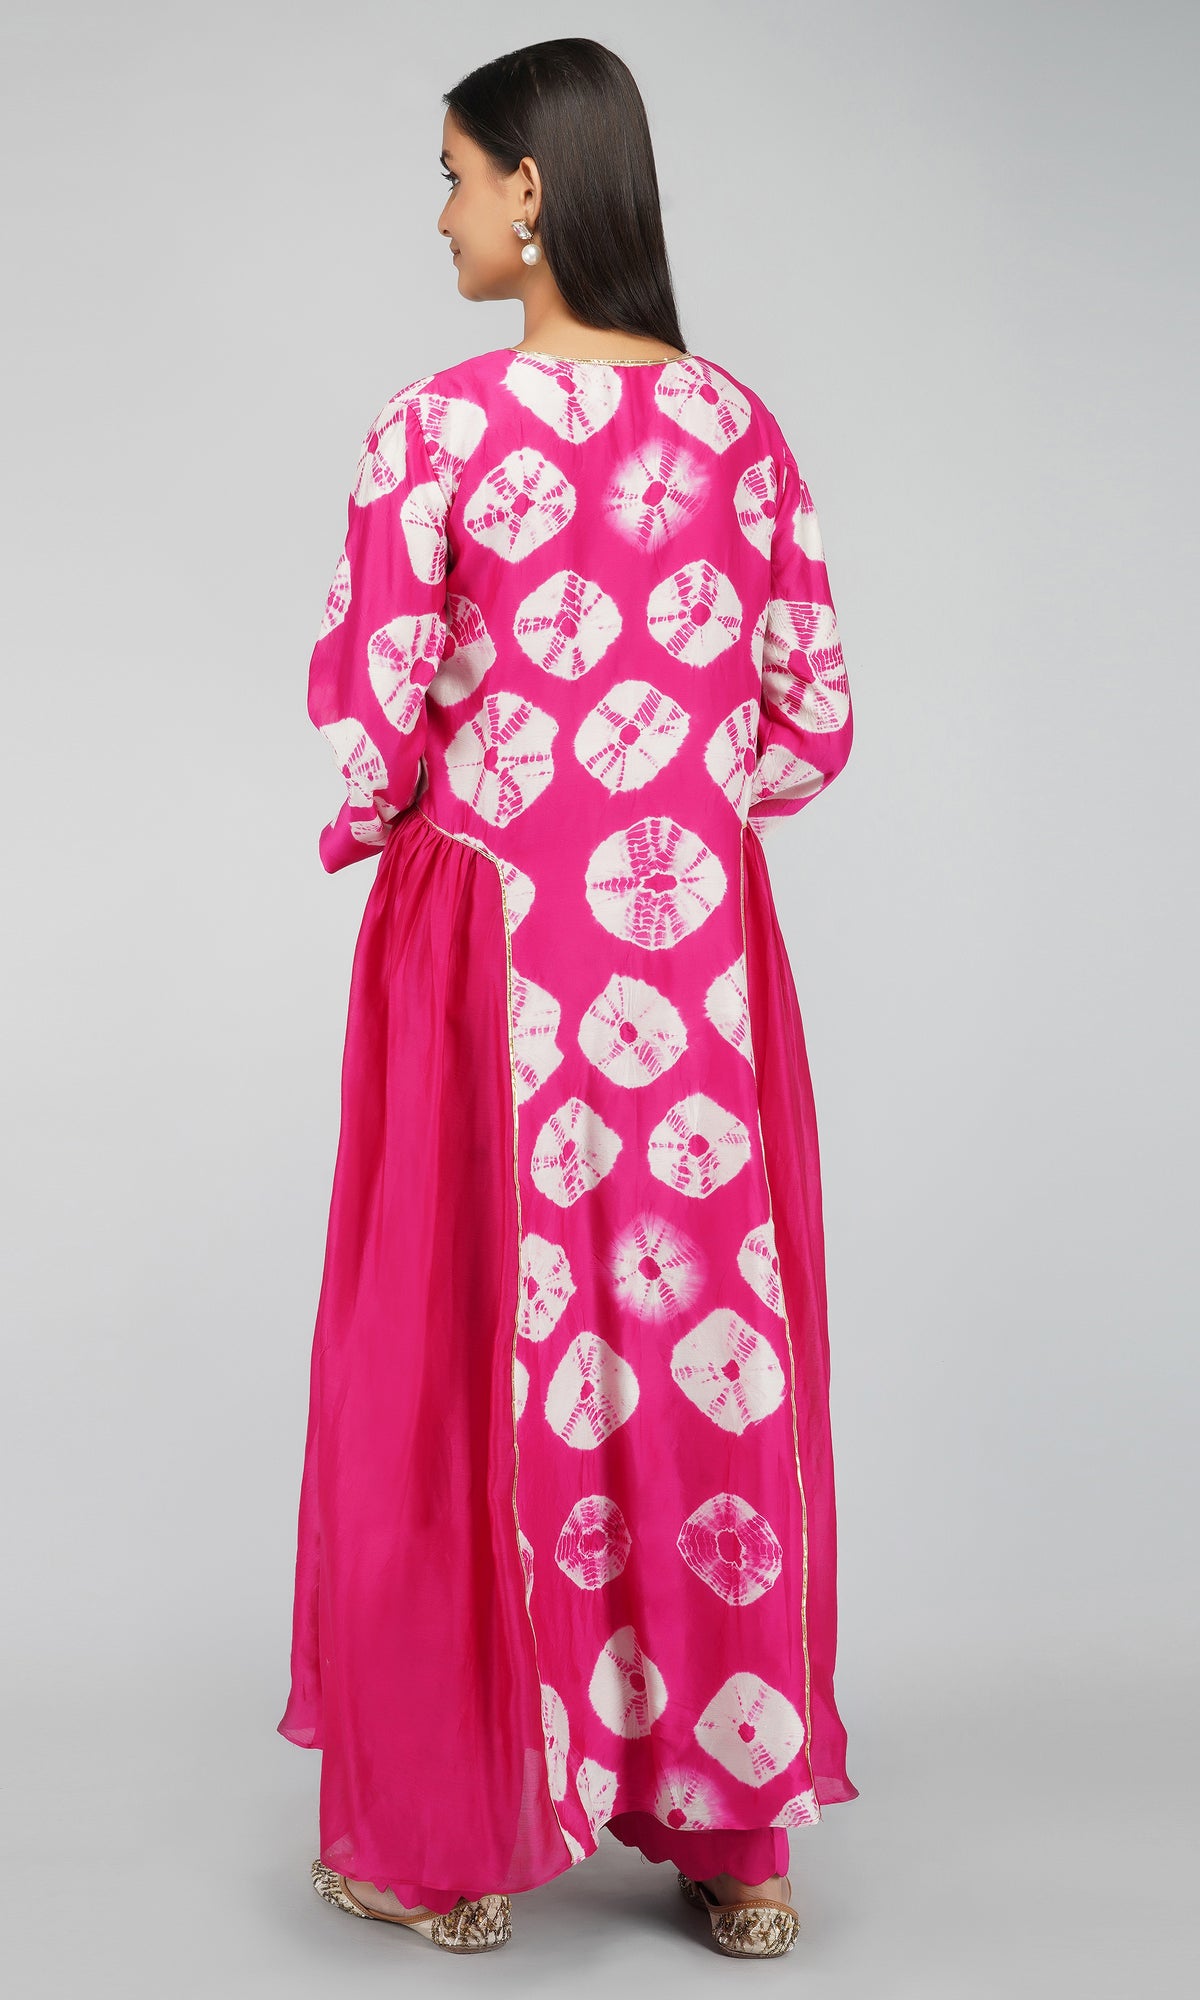 Pink Bandhani Dye Chanderi Silk Kurta with Cotton Pants - Set of 2